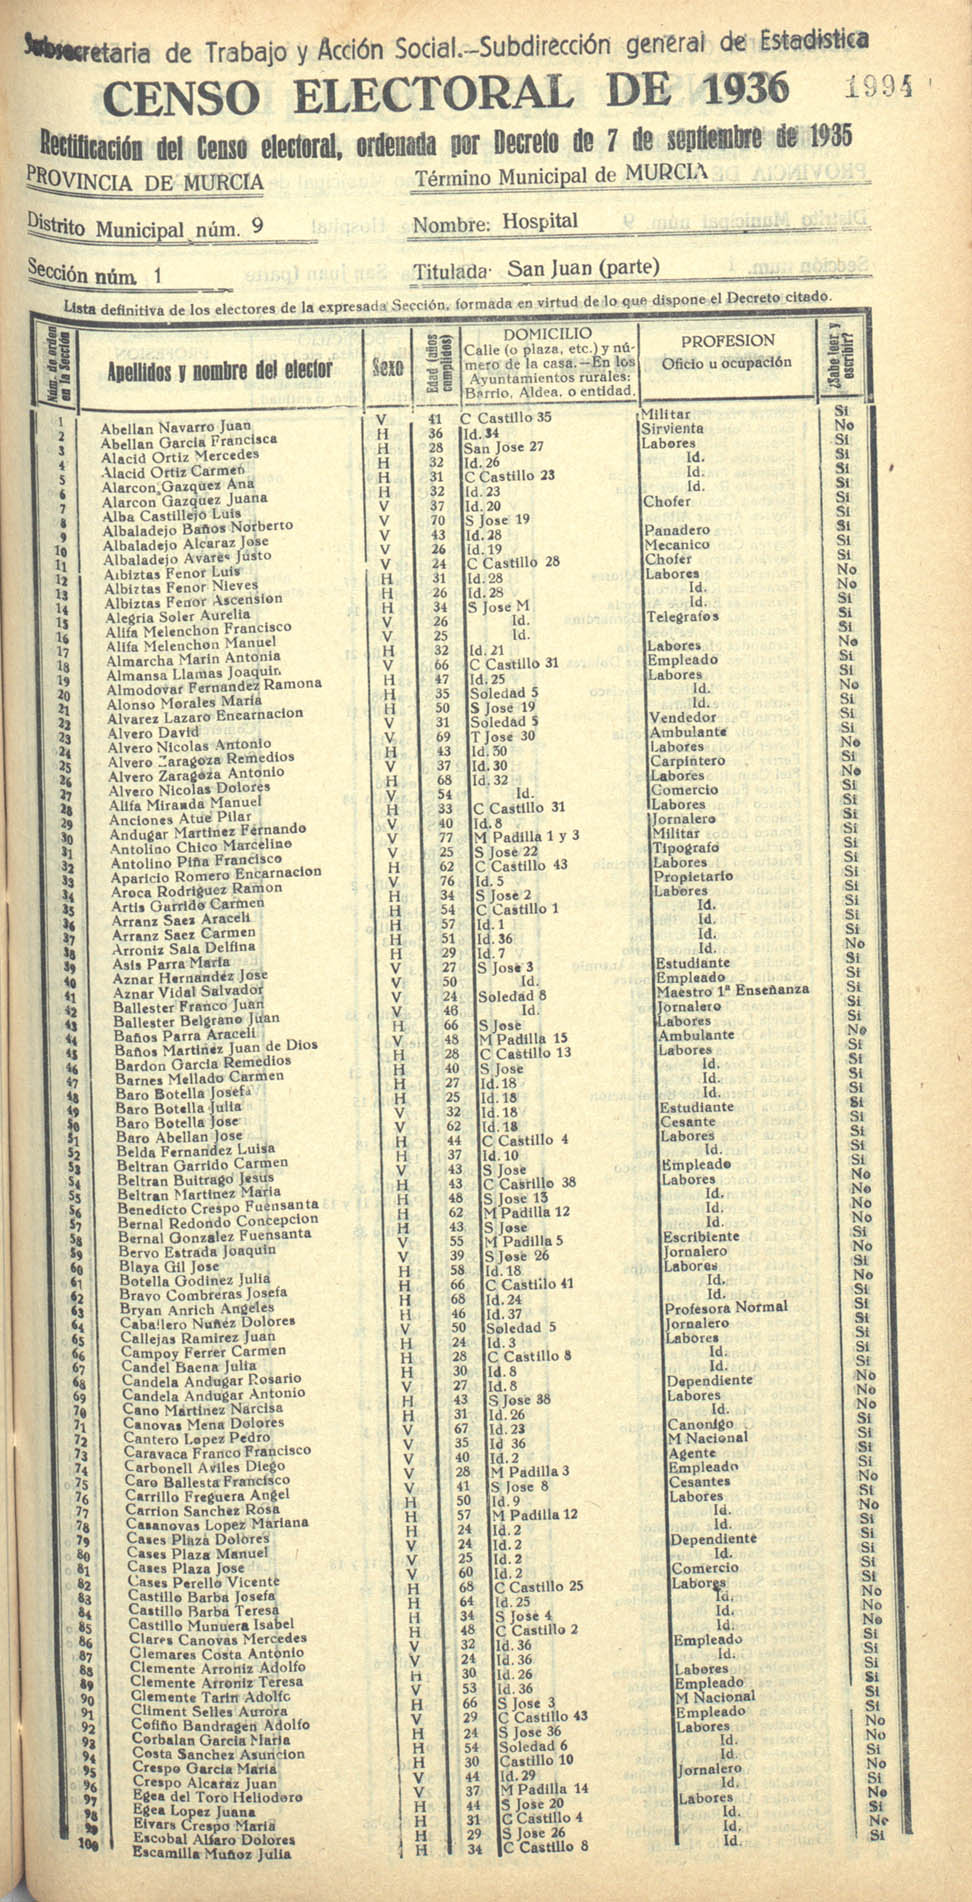 Censo electoral provincial de 1936. Murcia. Distrito 9º, Hospital. Sección 1ª, San Juan (parte)